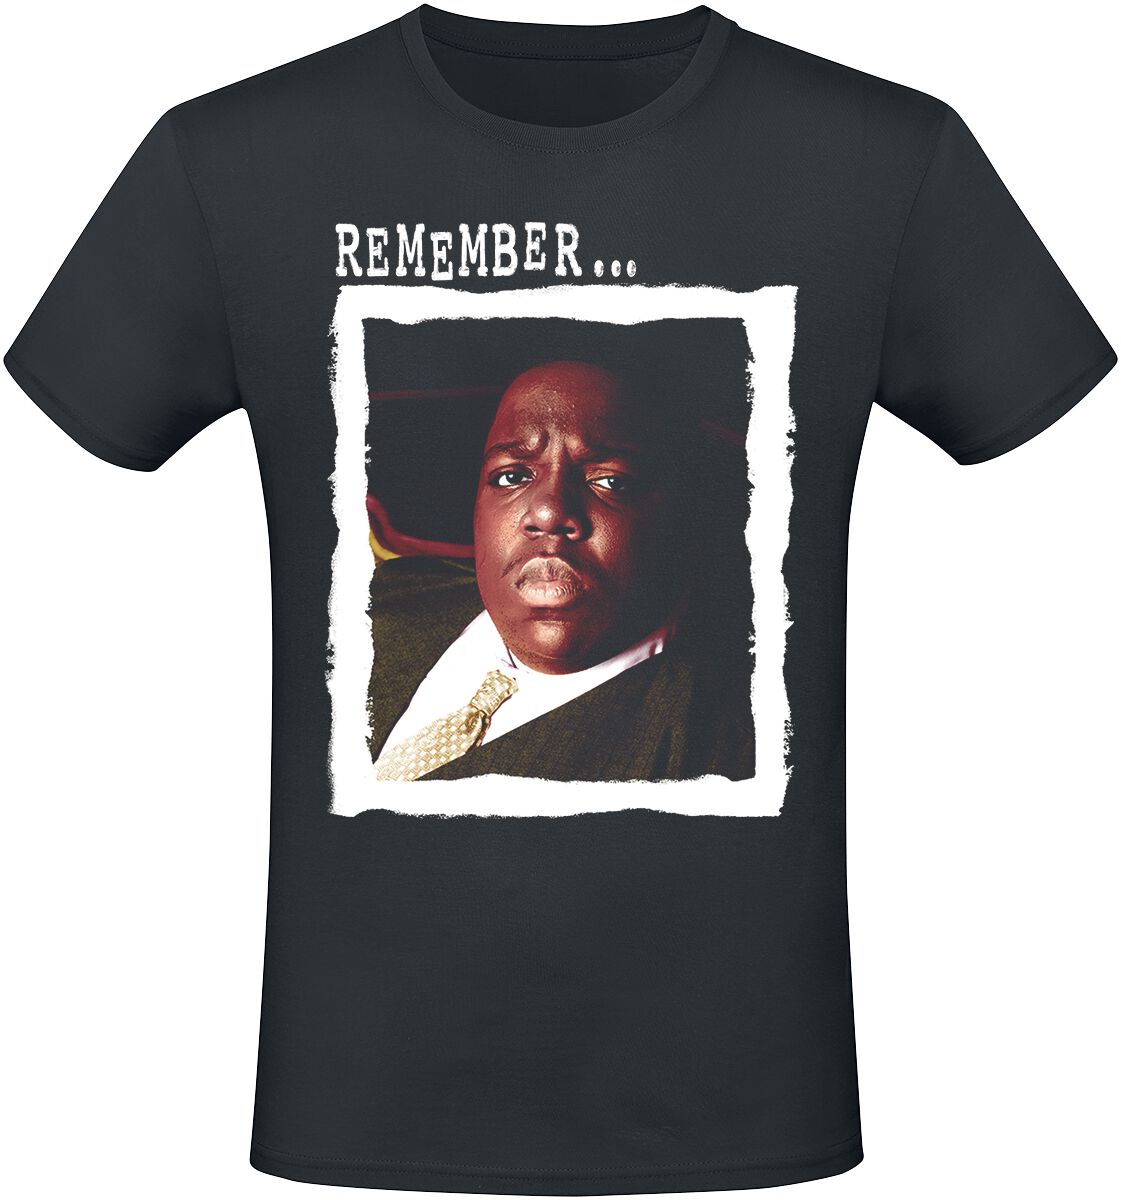 Notorious B.I.G. T-Shirt - Remember - S bis XXL - für Männer - Größe S - schwarz  - Lizenziertes Merchandise!